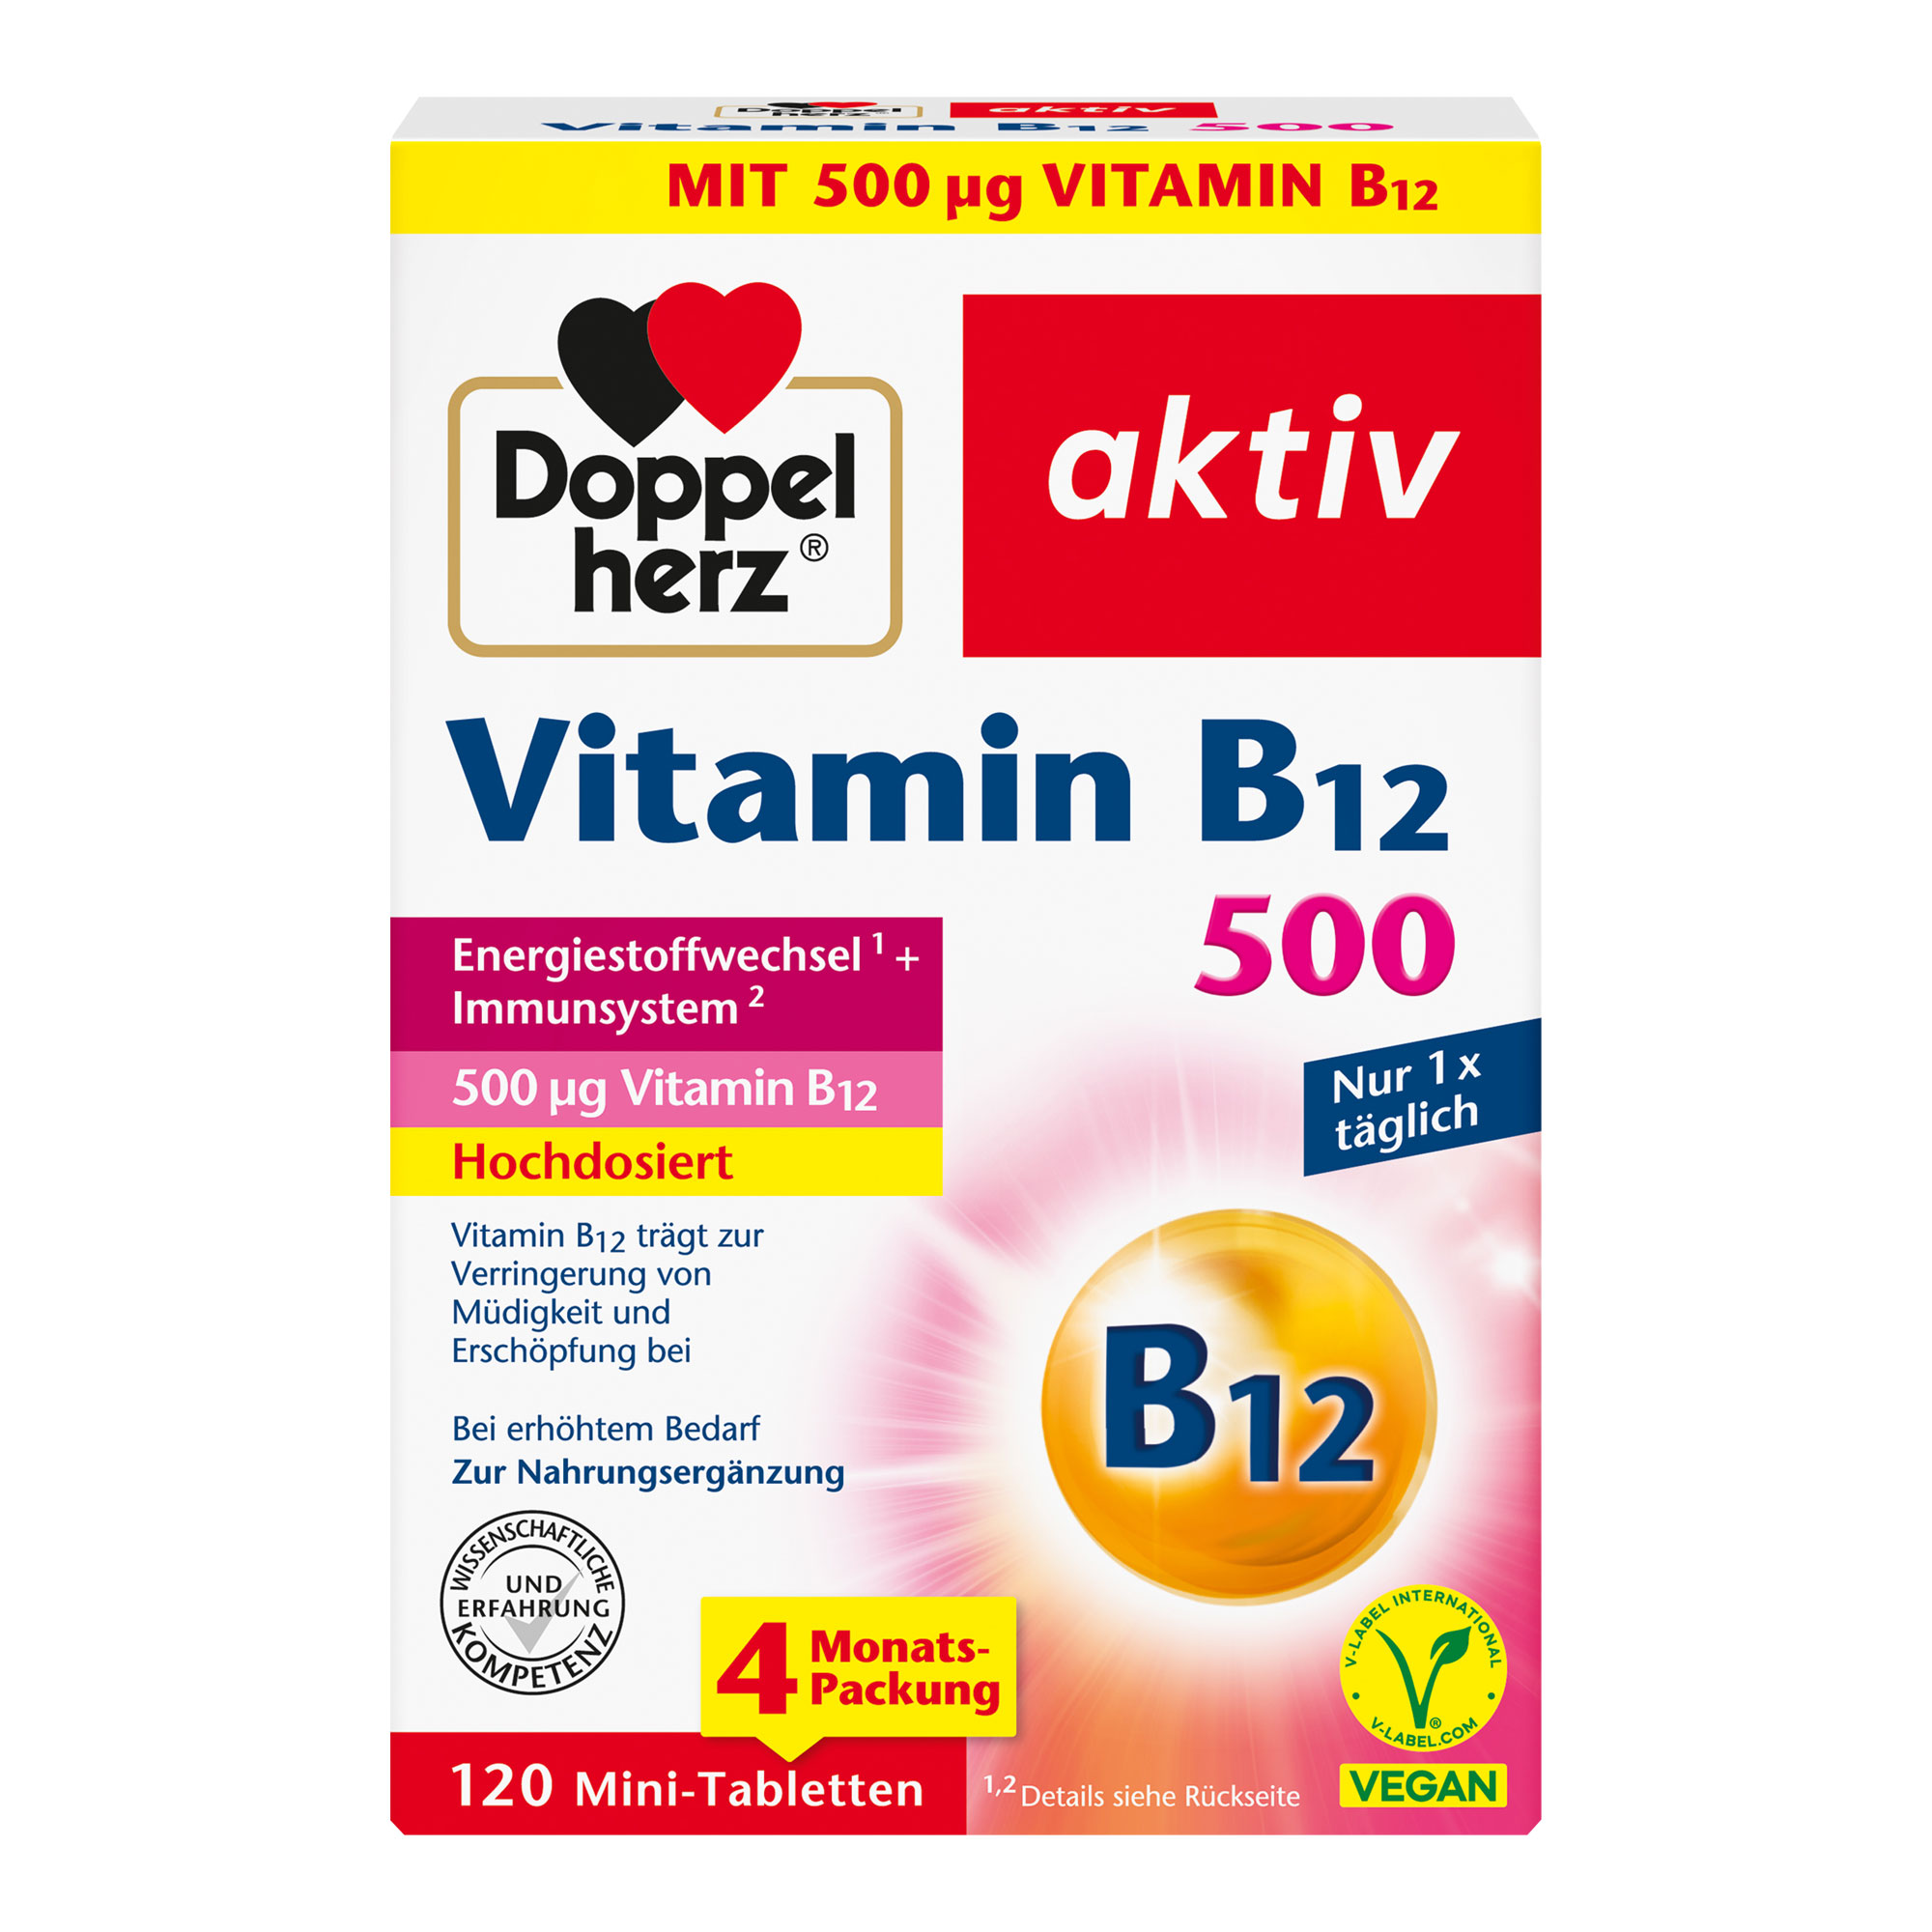 Nahrungsergänzungsmittel mit hochdosiertem Vitamin B12.